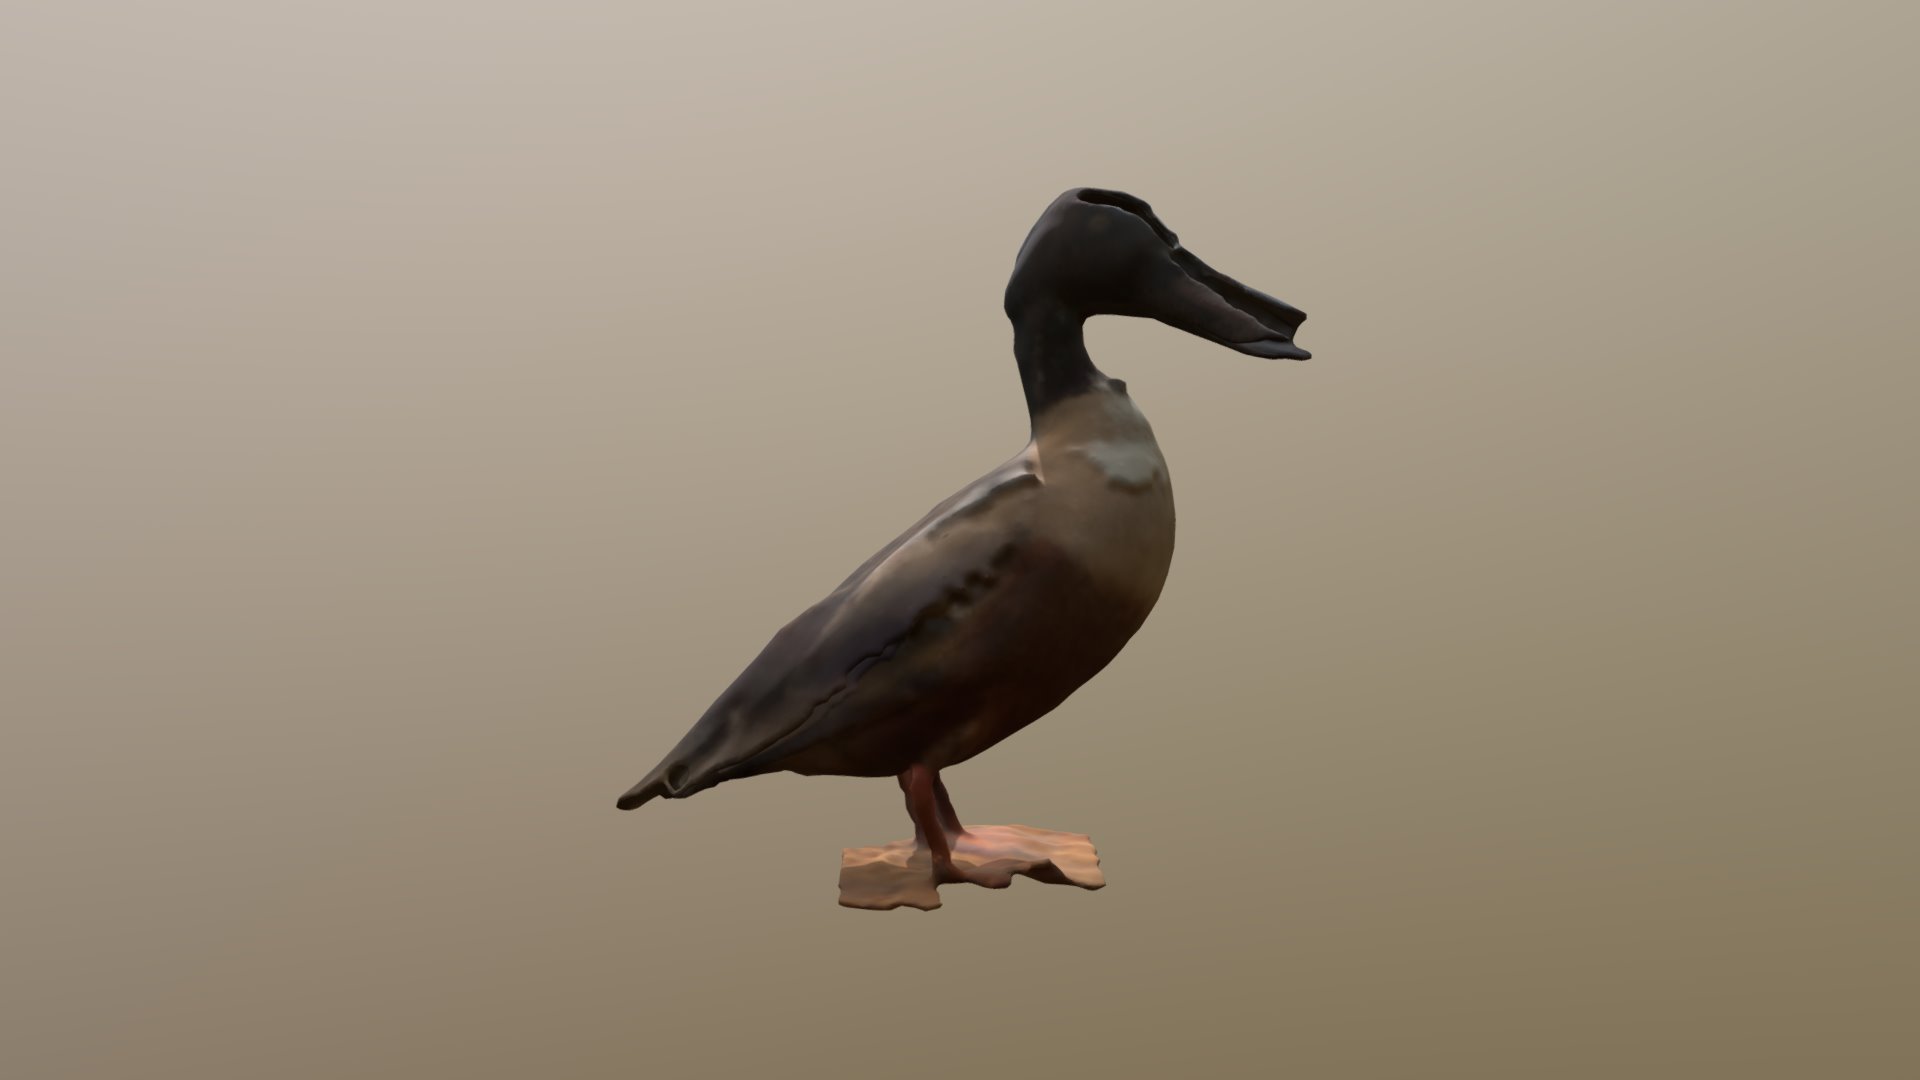 Duck 3